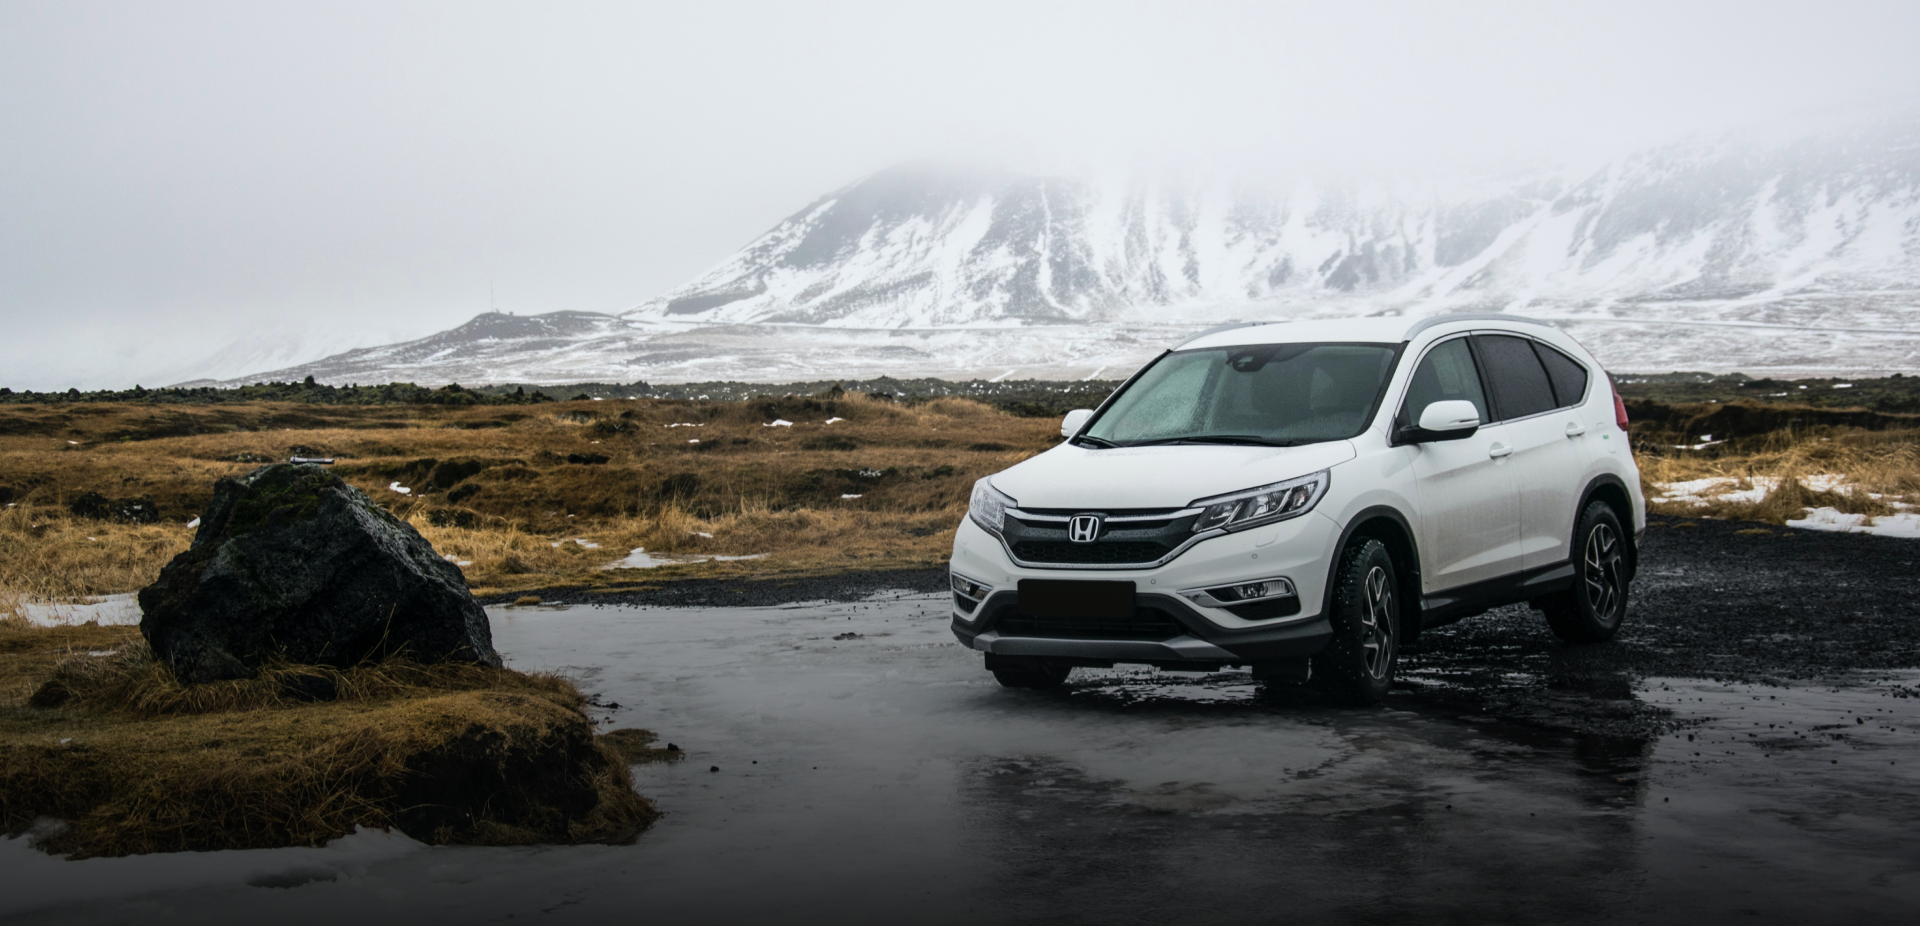 Vit Honda i kyligt landskap med snötäckta berg bakom